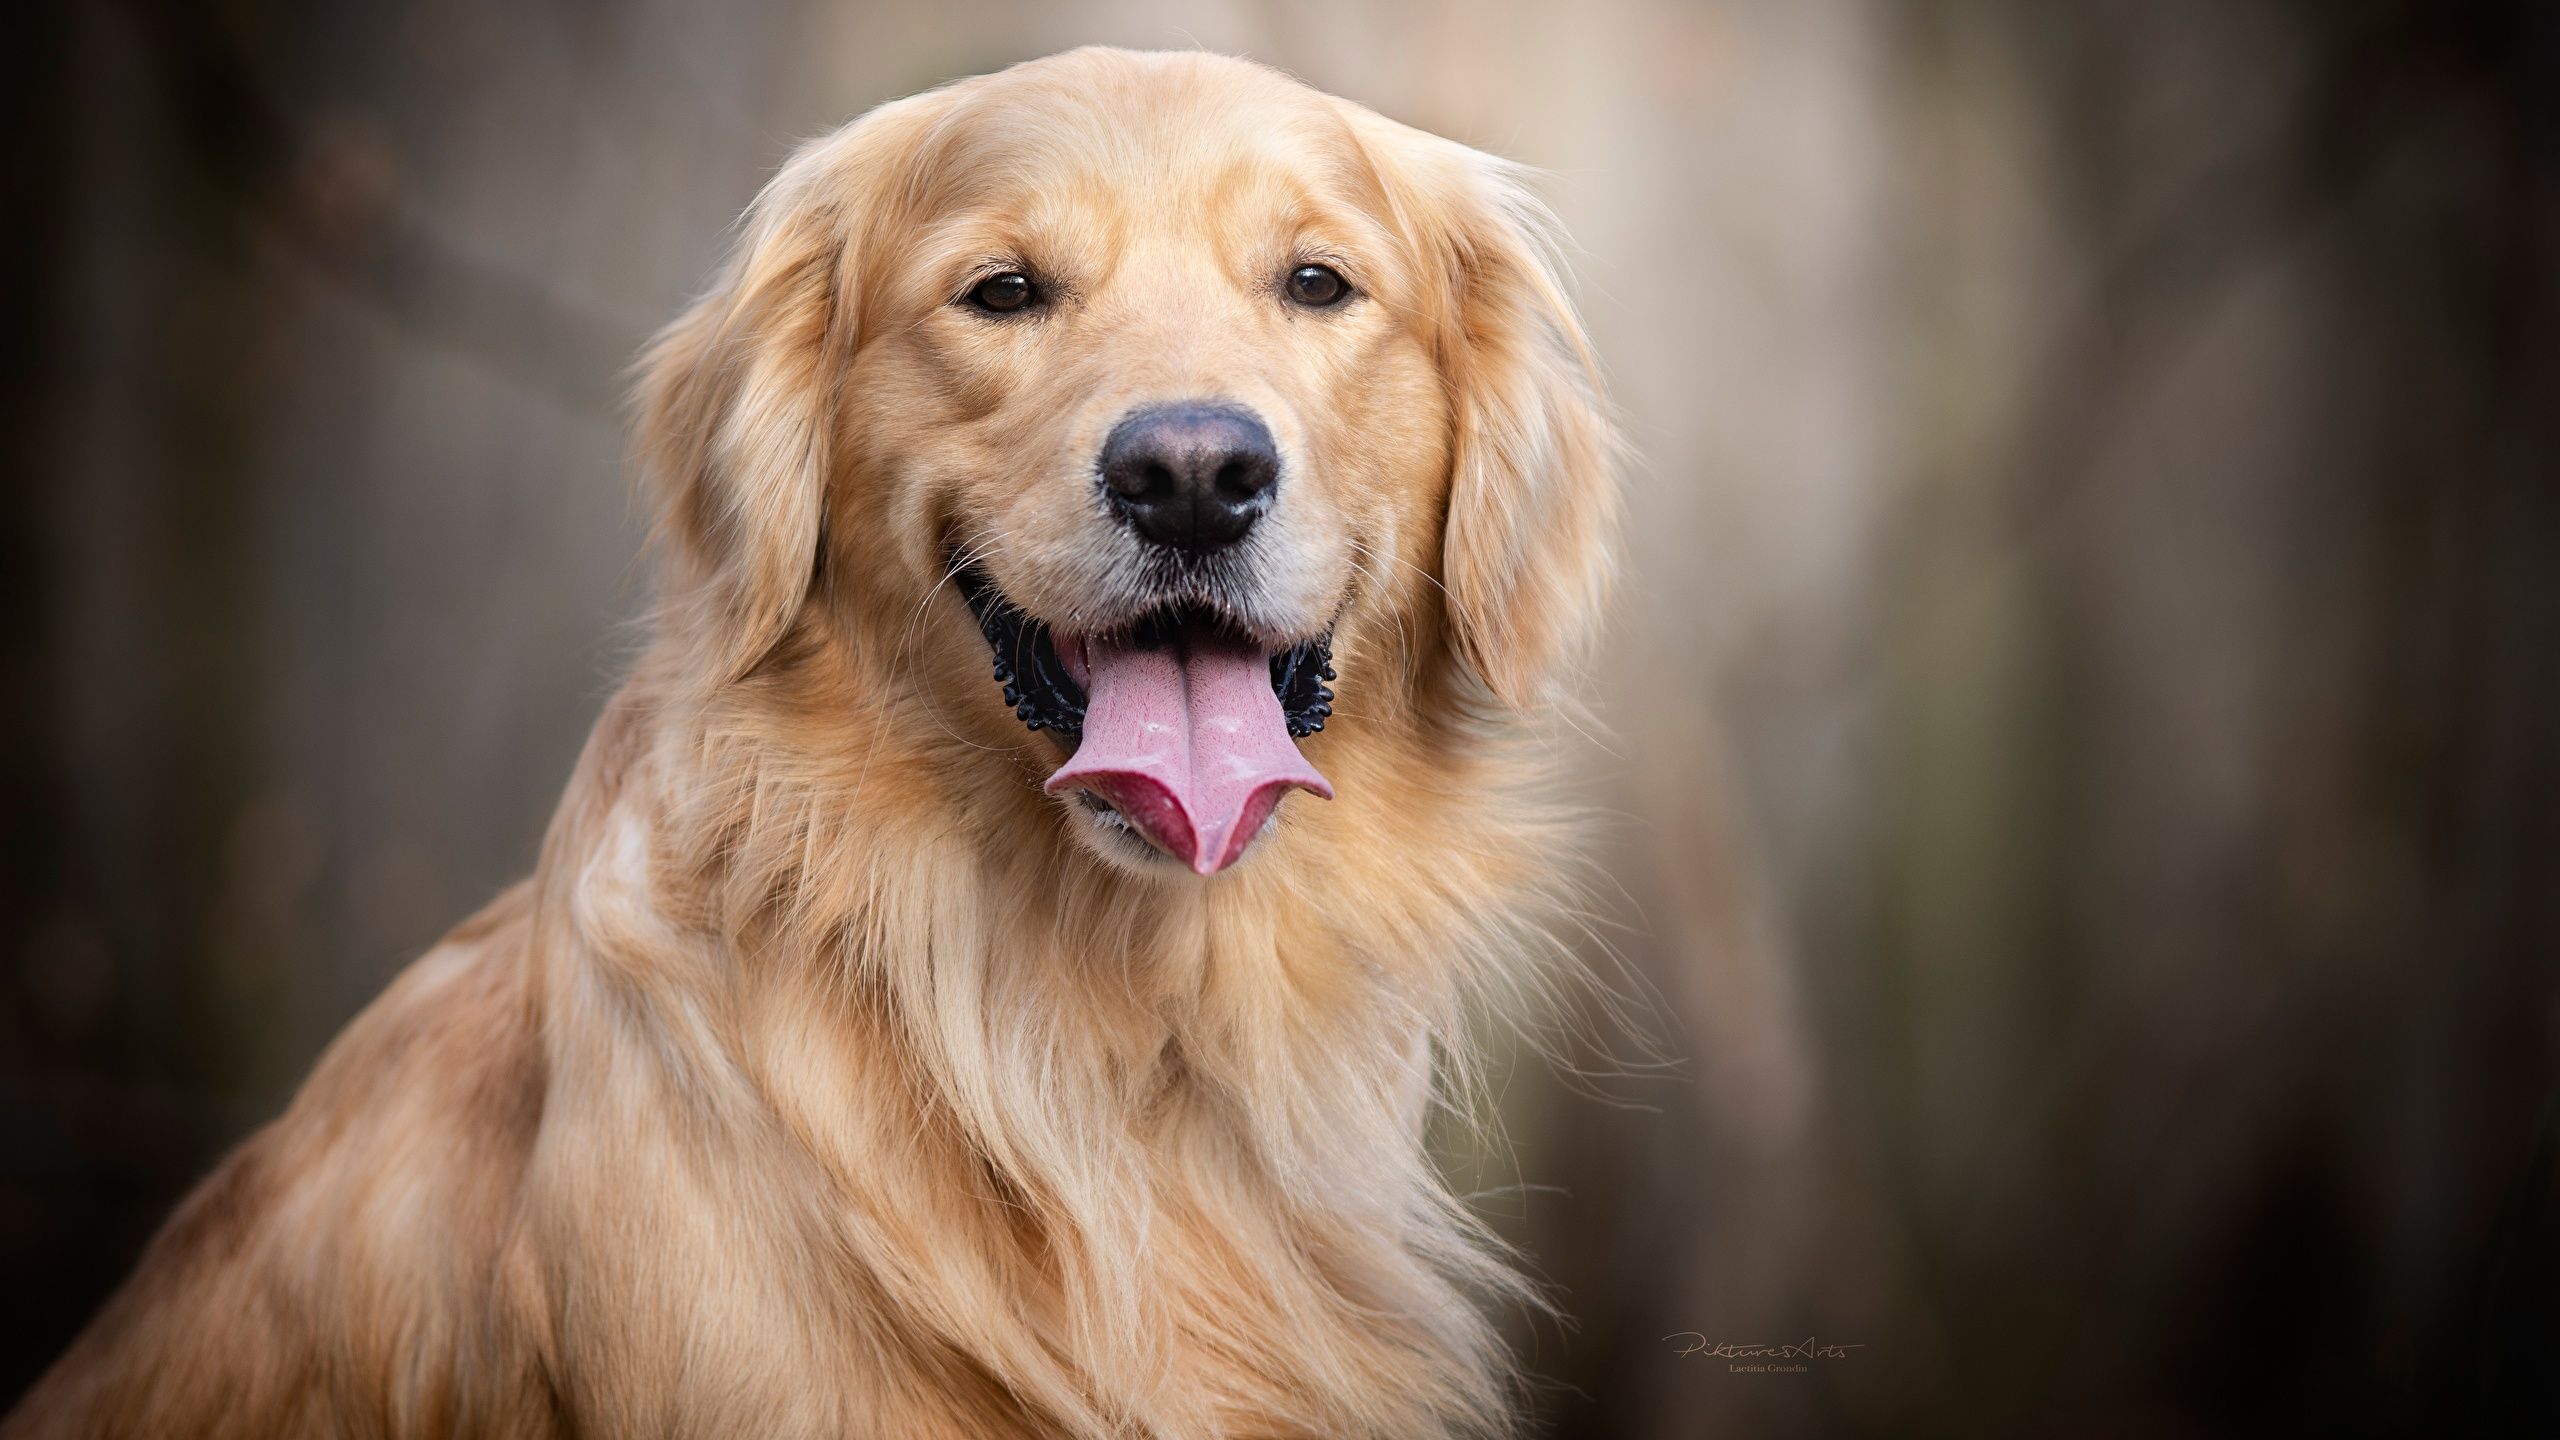  Hund Hintergrundbild 2560x1440. Desktop Hintergrundbilder Golden Retriever Hunde Zunge 2560x1440